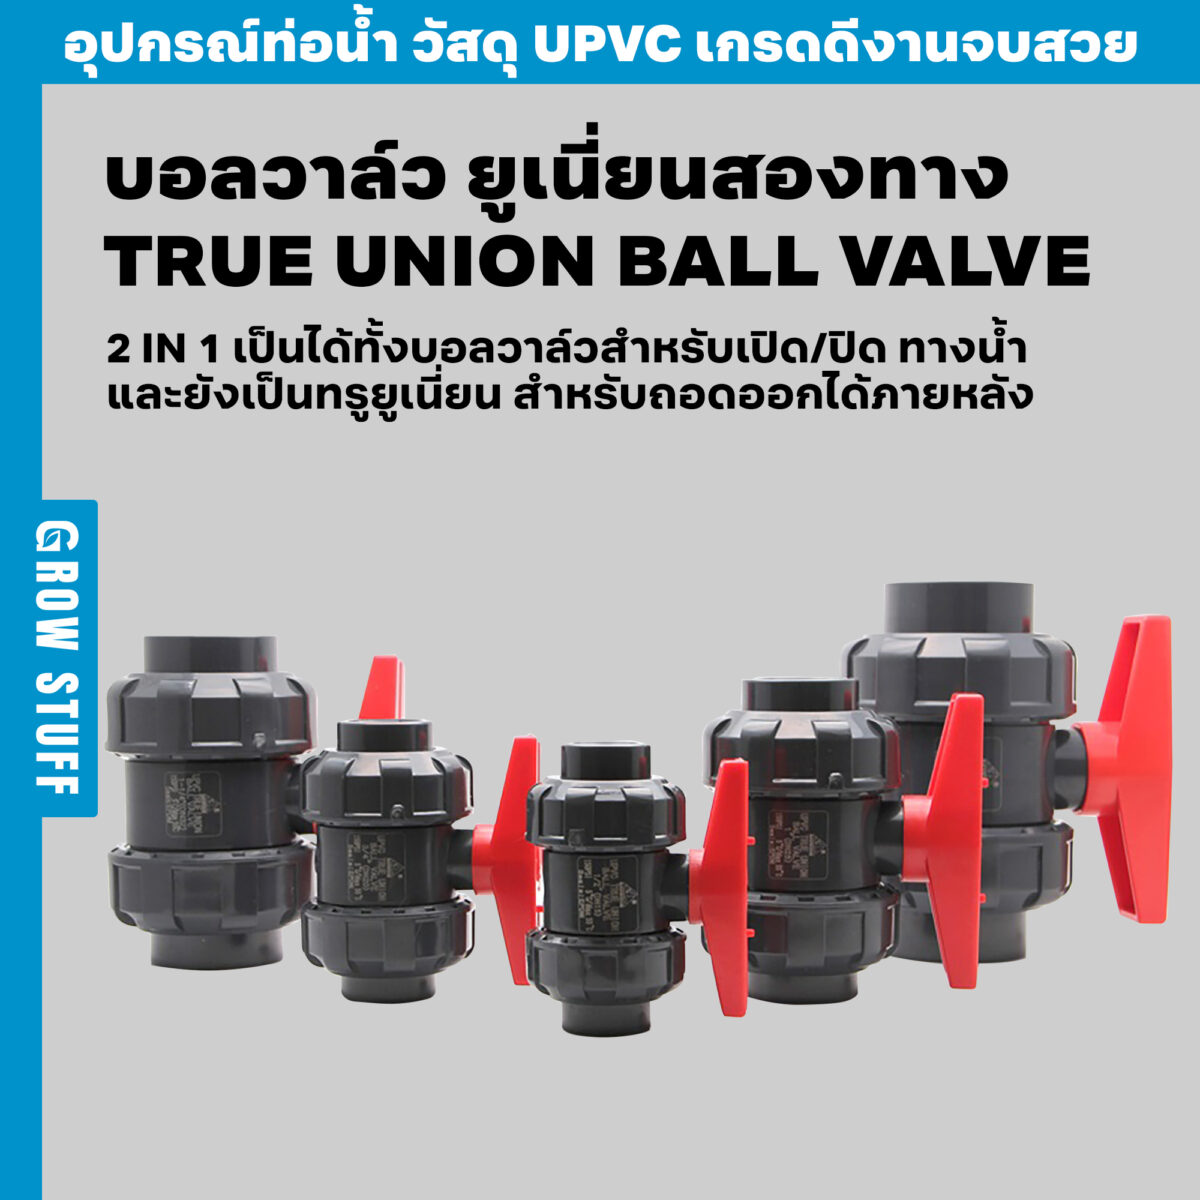 บอลวาล์ว ยูเนี่ยนสองทาง True Union Ball Valve